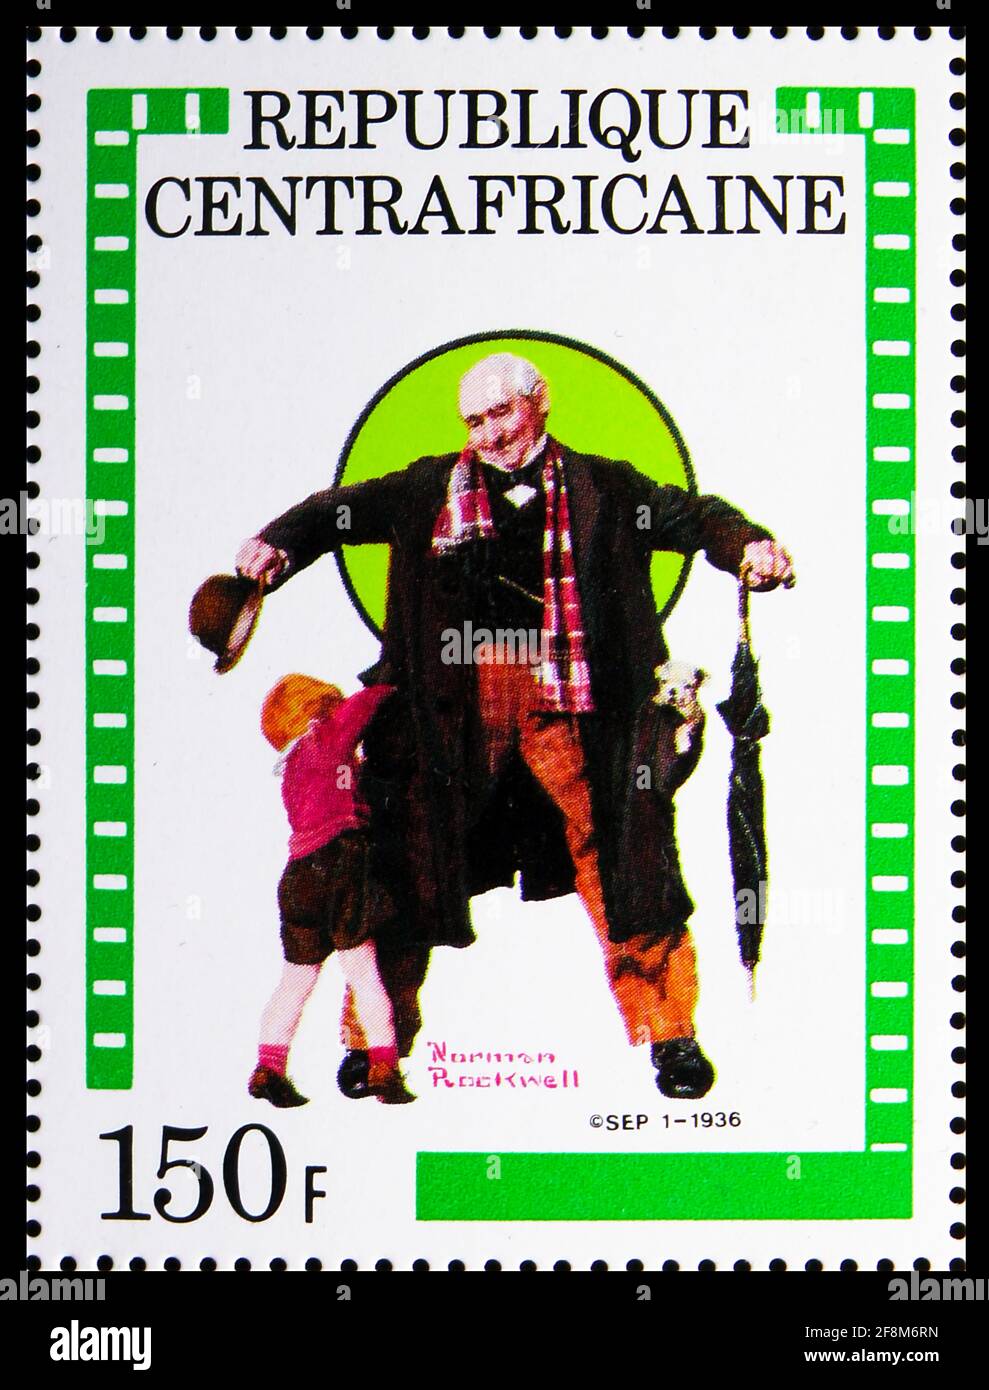 MOSCOU, RUSSIE - 5 OCTOBRE 2019 : timbre-poste imprimé en République centrafricaine présente des expositions, 4e anniversaire de la série Norman Rockwell, Banque D'Images